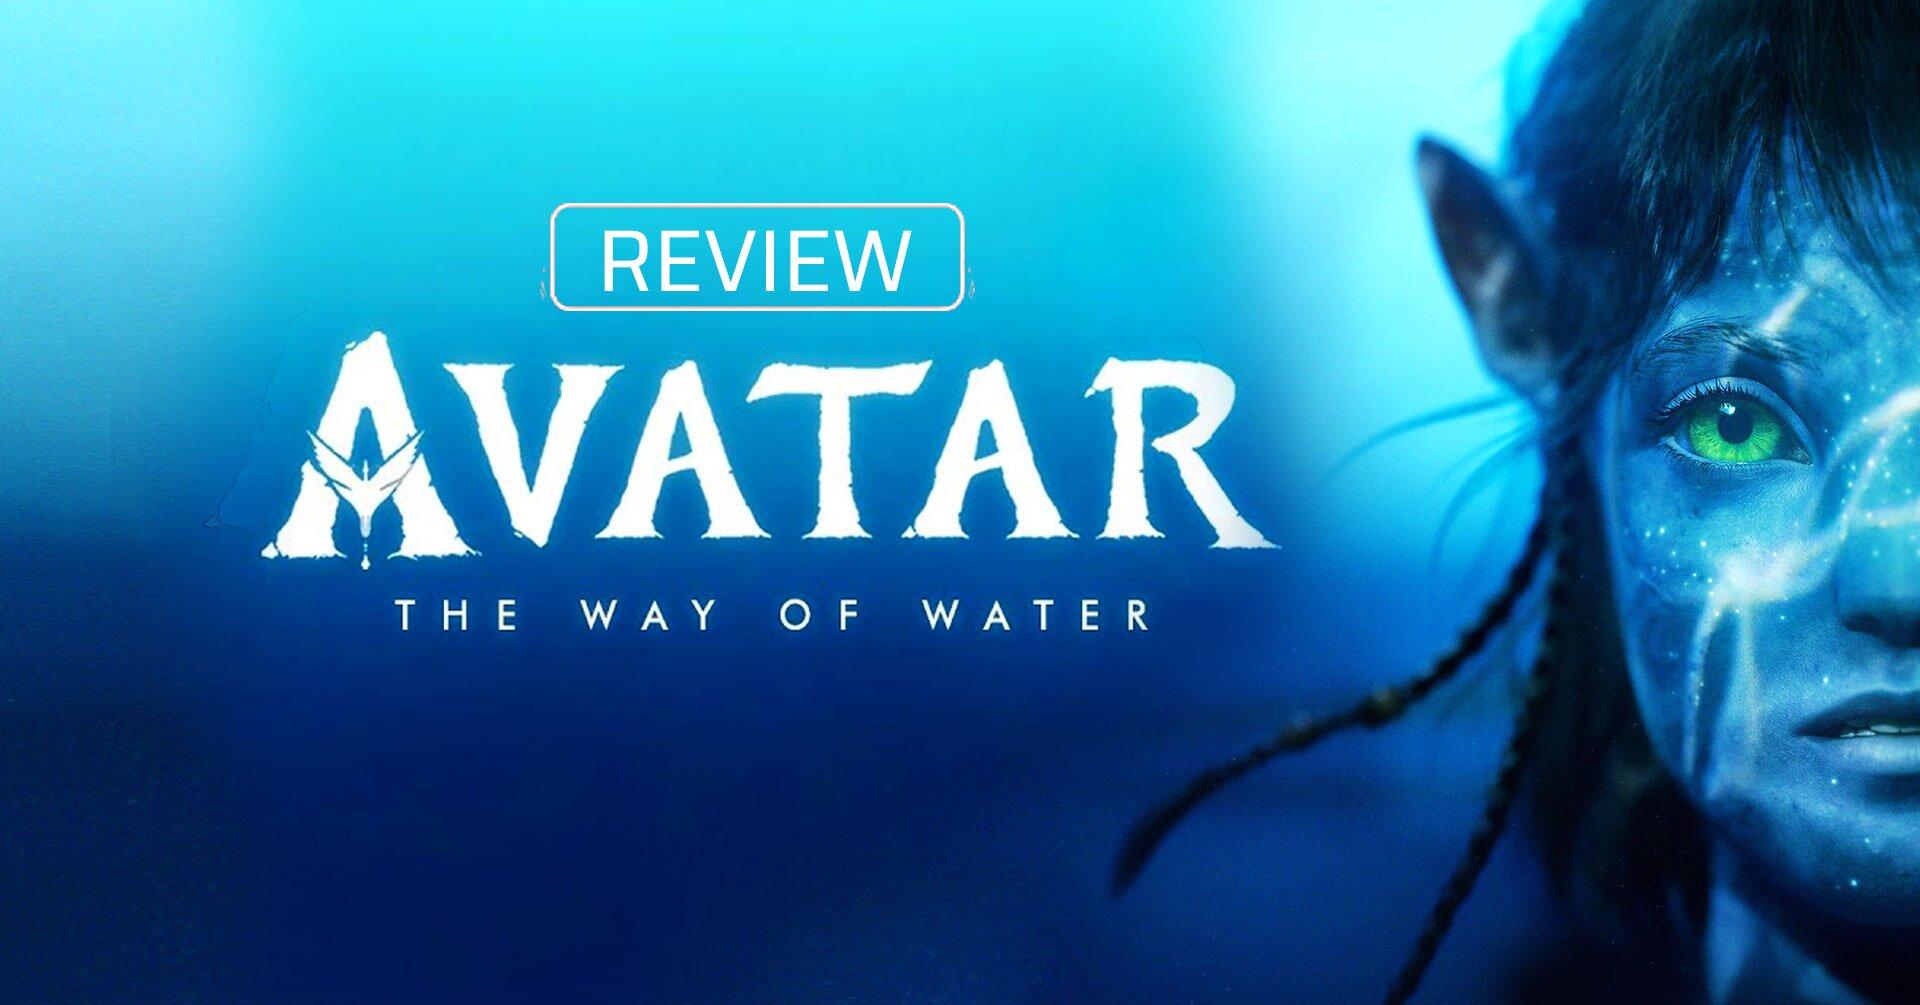 Review Avatar 2 The Way Of Water Phong Cách Phim Marvel Nhưng Là Màu Xanh Bloganchoi 5920